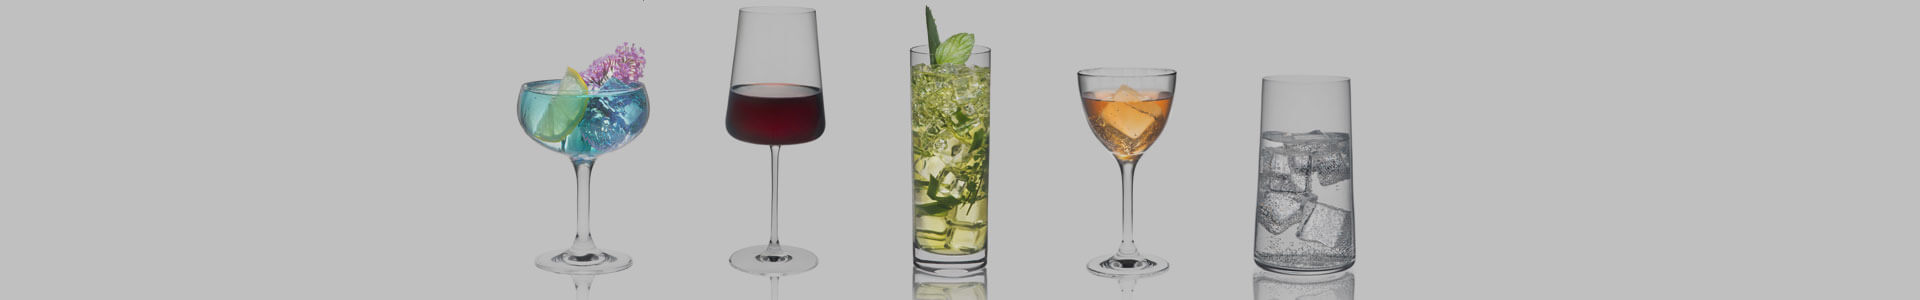 Verschiedene Gläser des Herstellers Rona Glas stehen mit Drinks gefüllt nebeneinander.